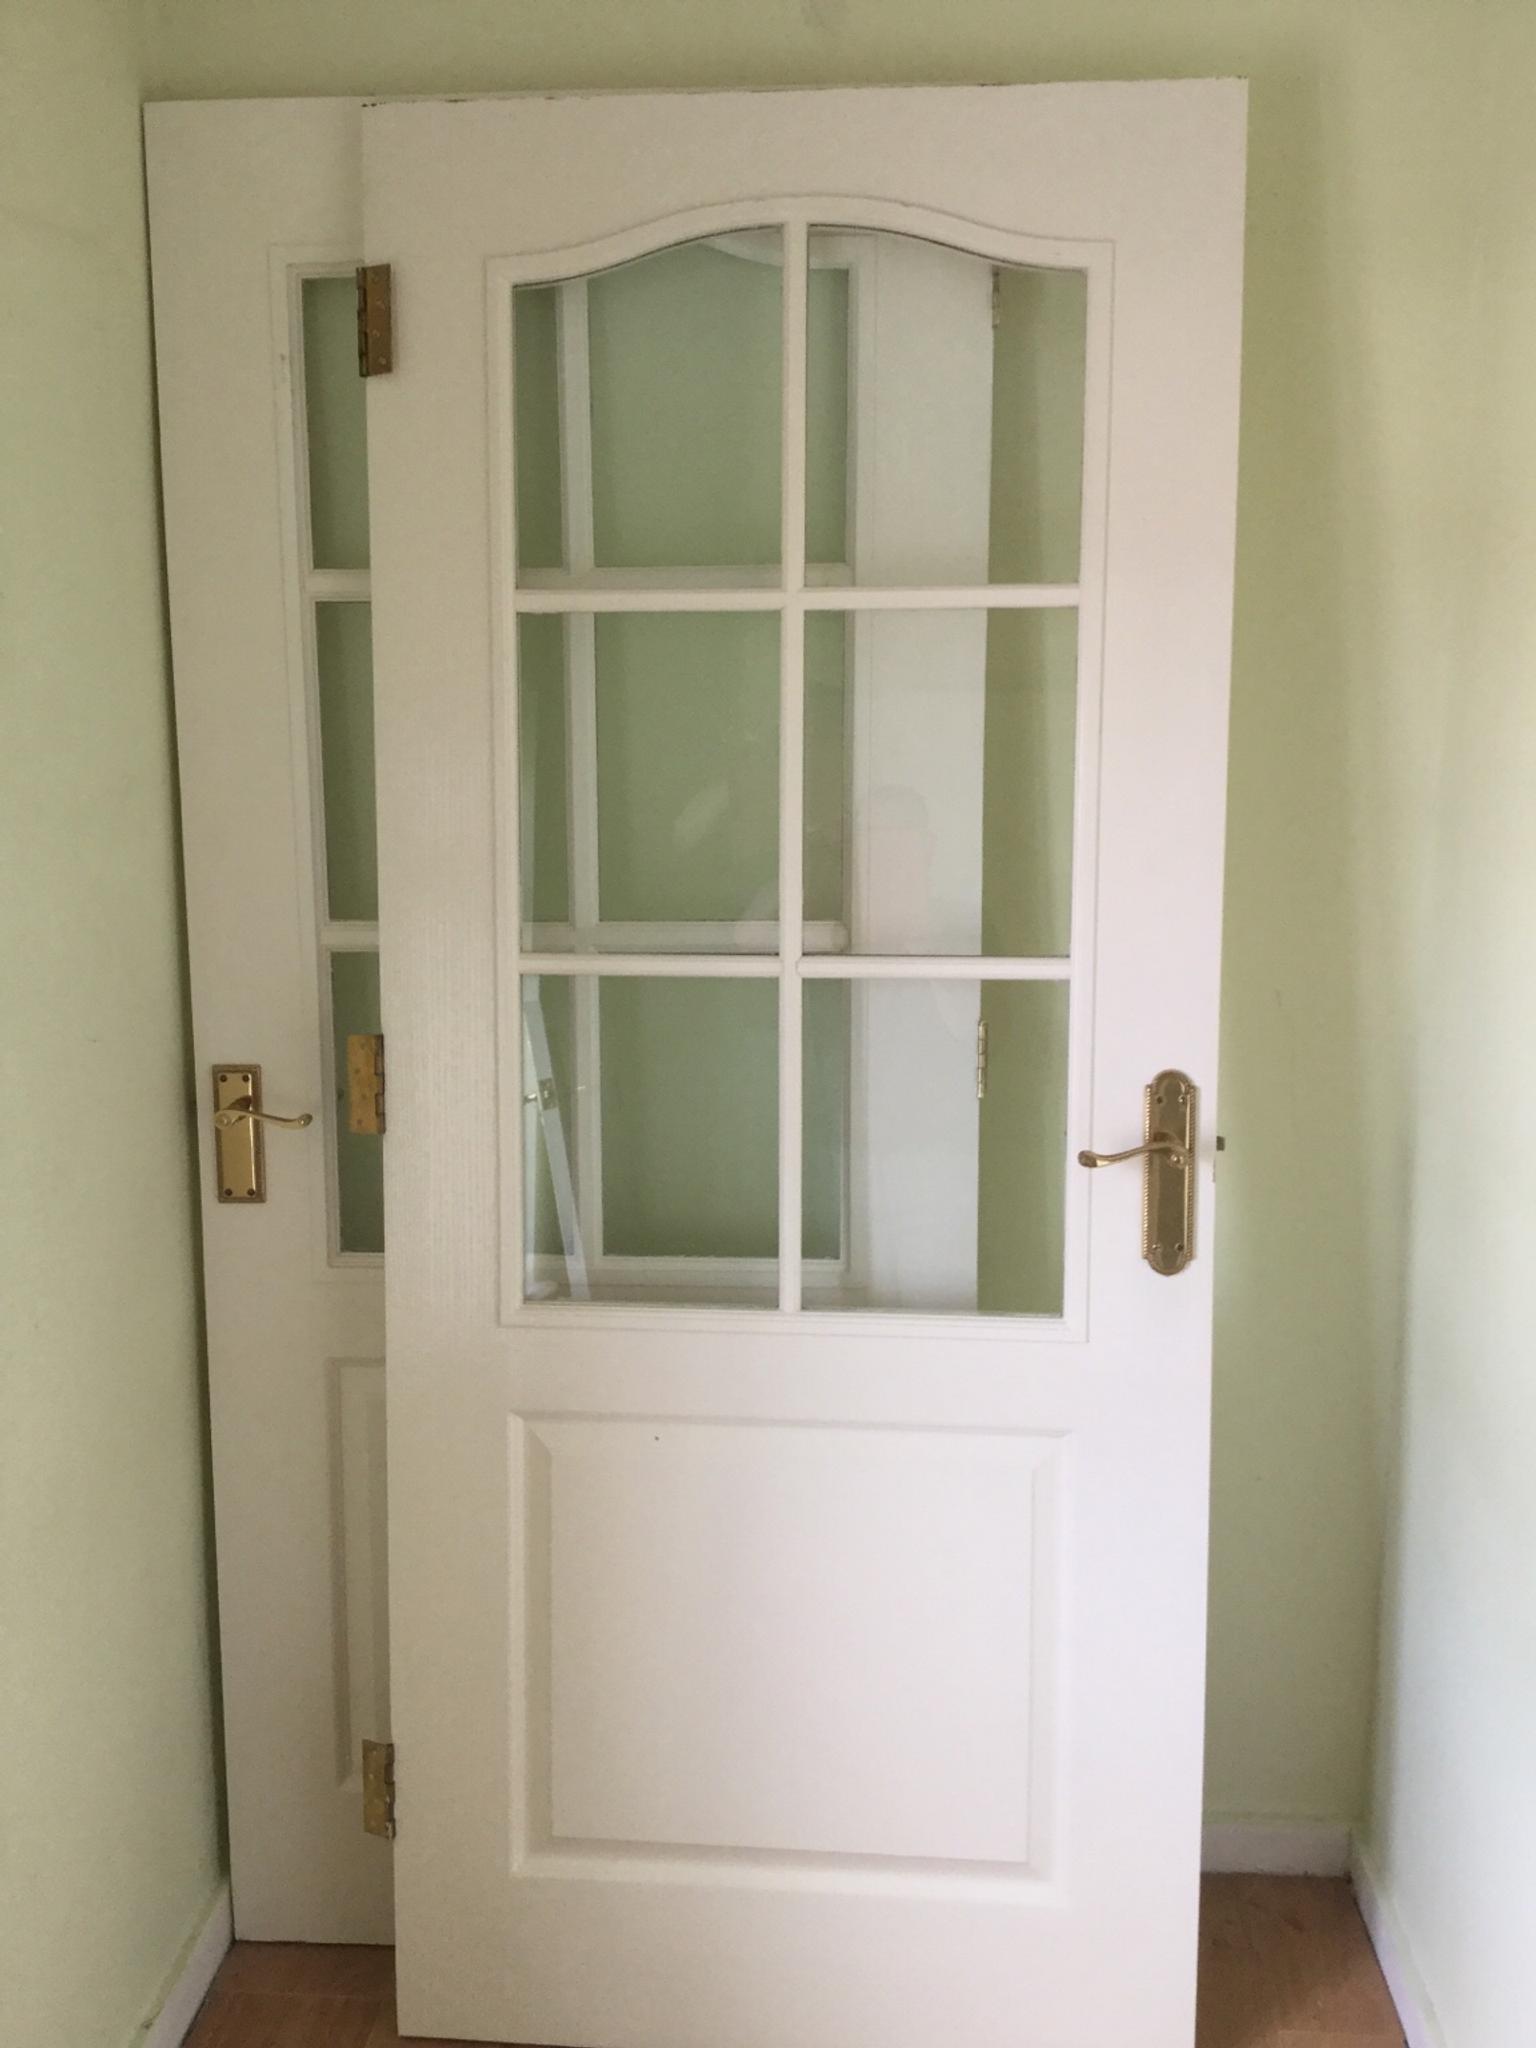 White Interior Doors X8 In Me15 Maidstone Fur Gratis Kaufen